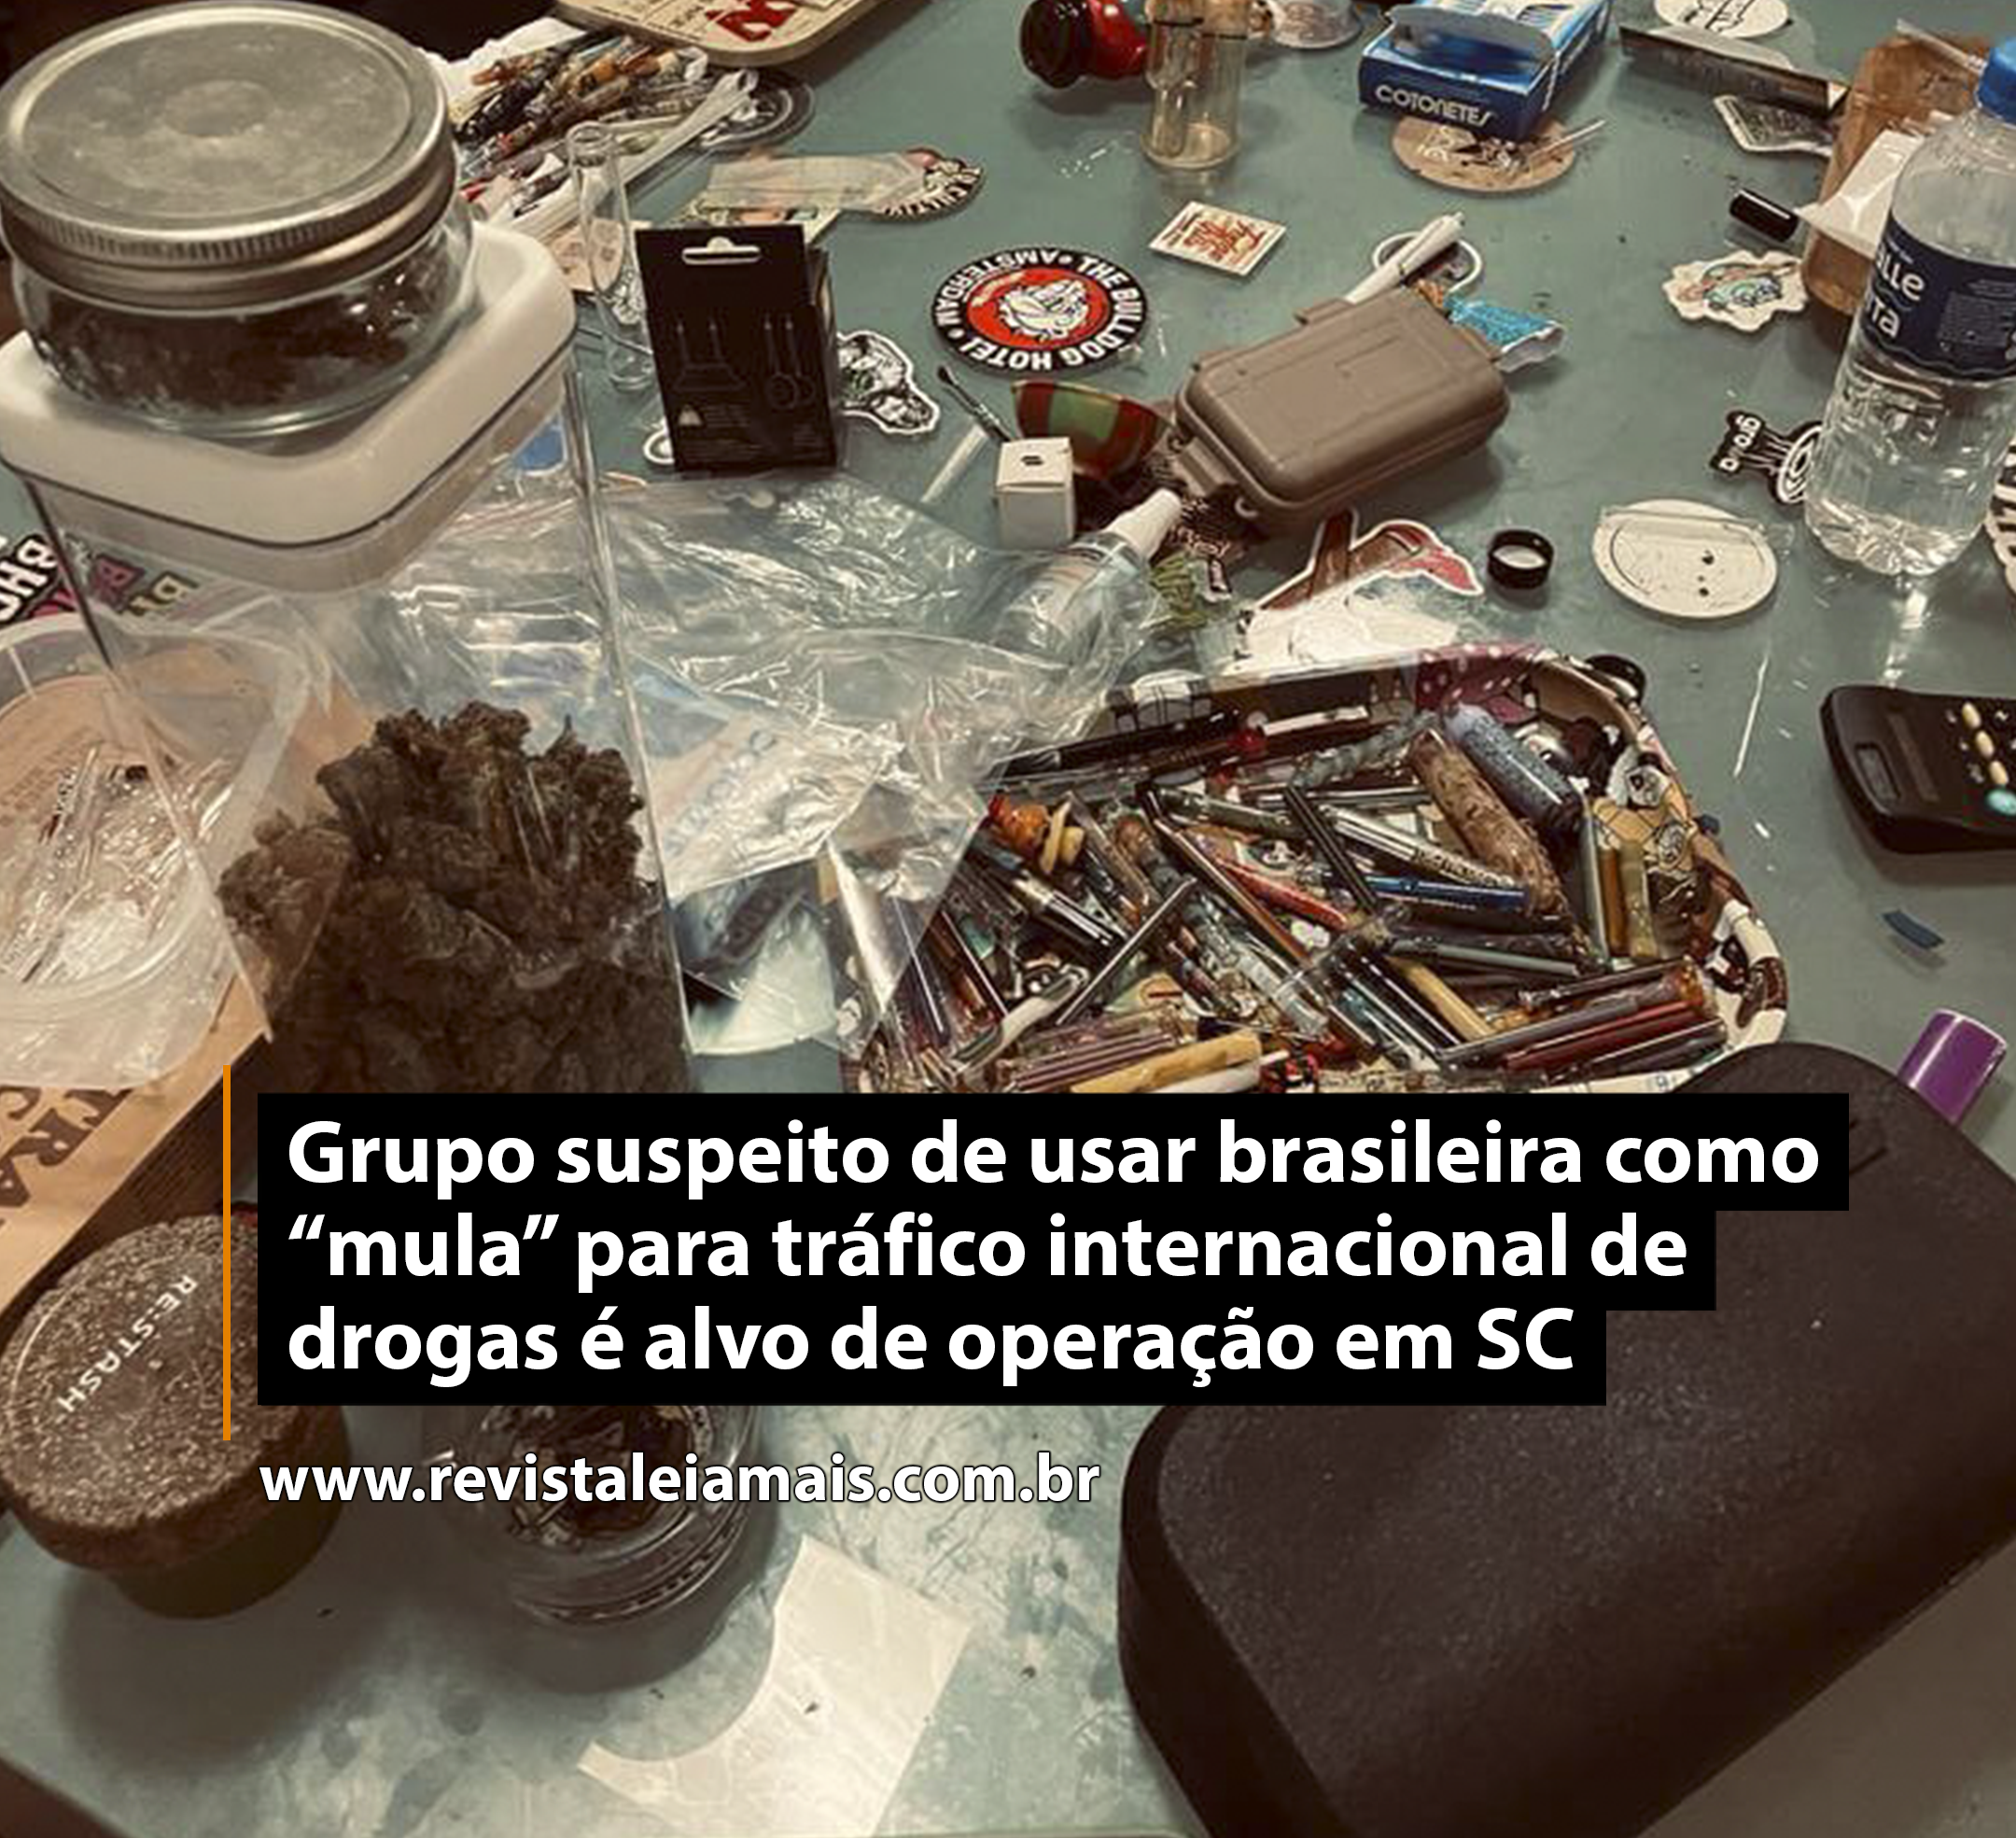 Grupo suspeito de usar brasileira como “mula” para tráfico internacional de drogas é alvo de operação em SC